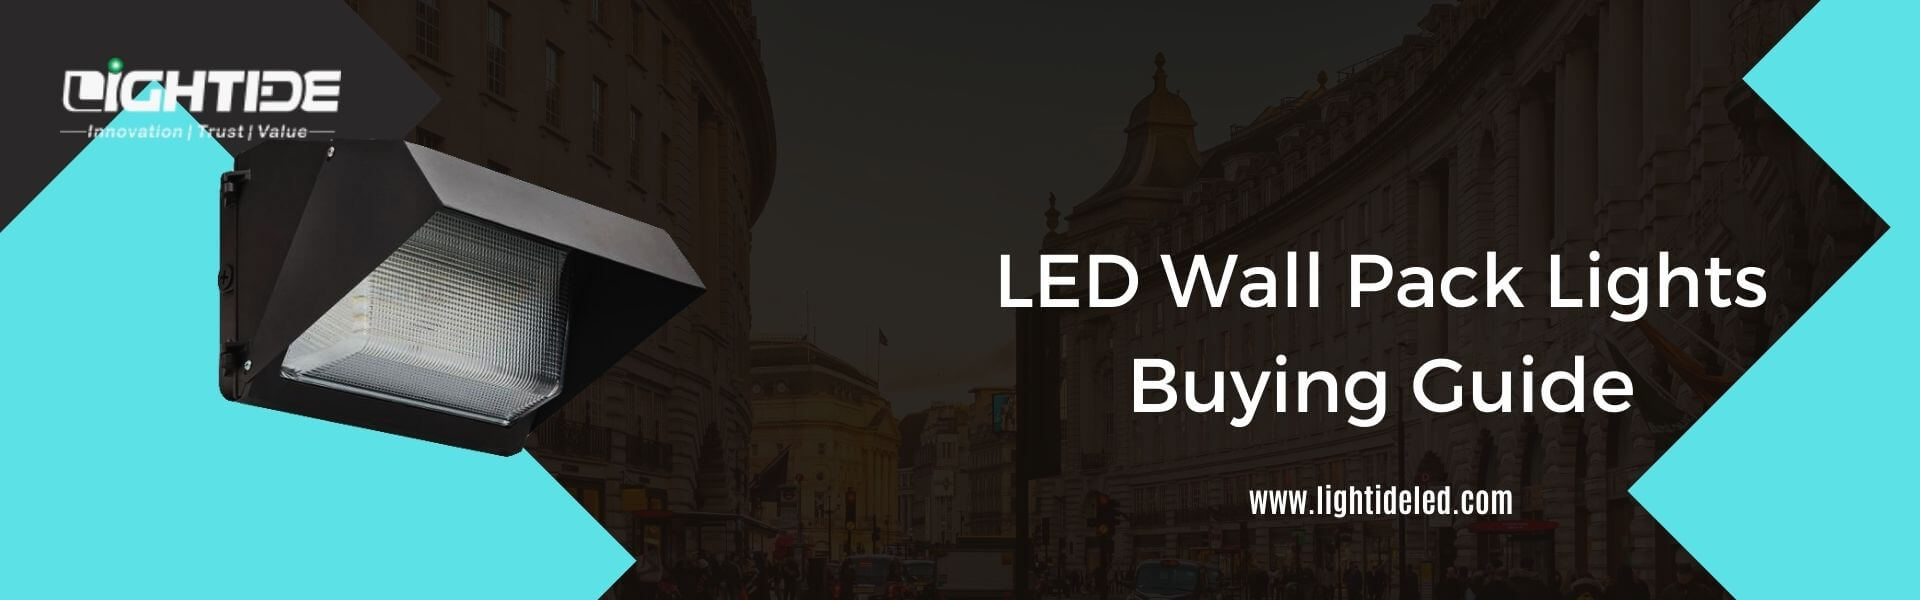 Lightideled led wall pack light buying guide banner